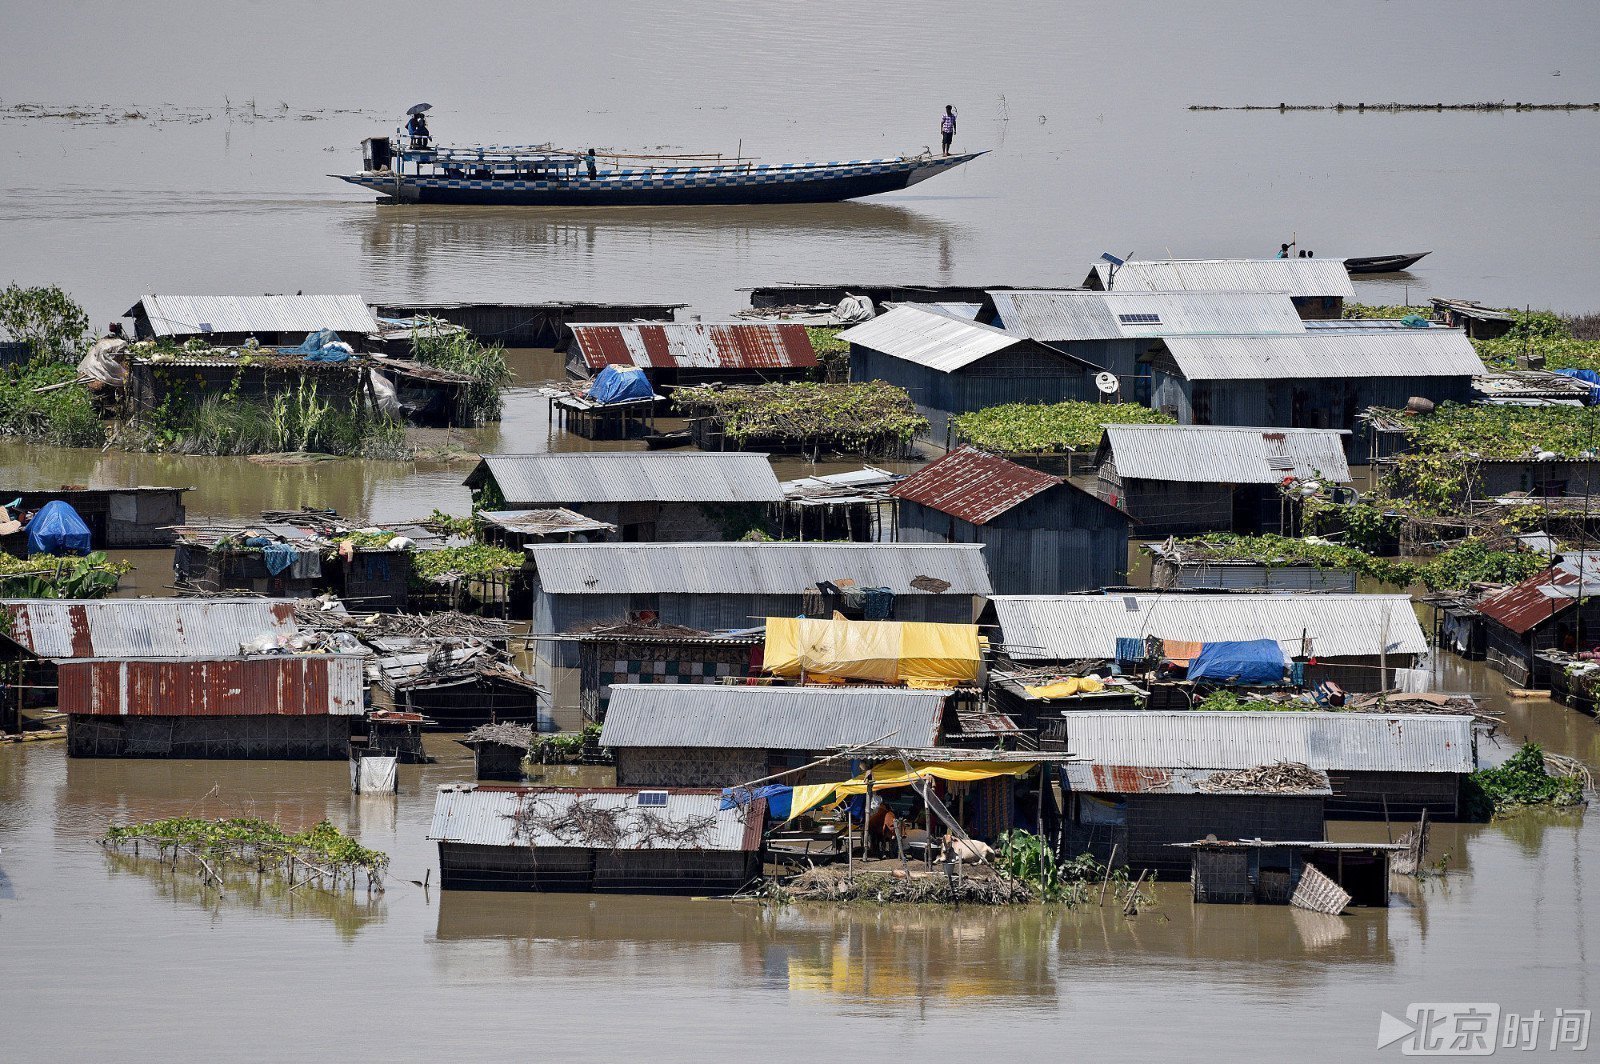 当地时间2017年7月14日,印度阿萨姆邦,民众乘船离开被淹的村庄